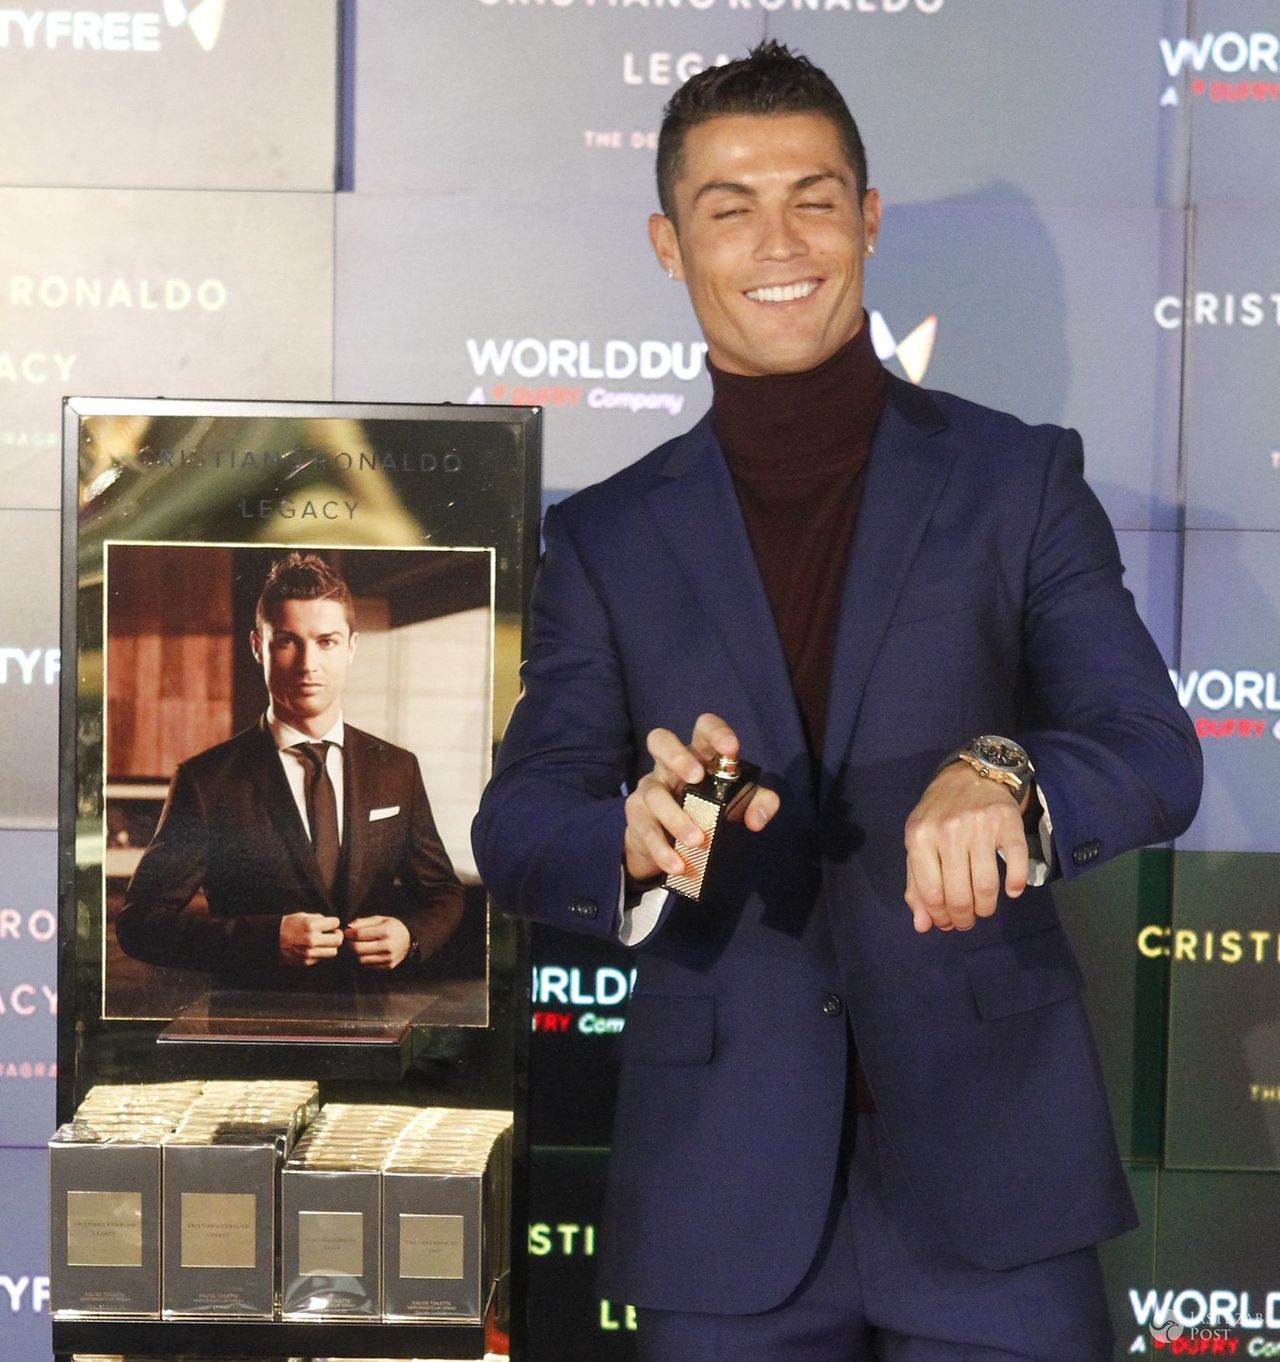 Cristiano Ronaldo promuje swoje pierwsze perfumy "Legacy" (fot. ONS)